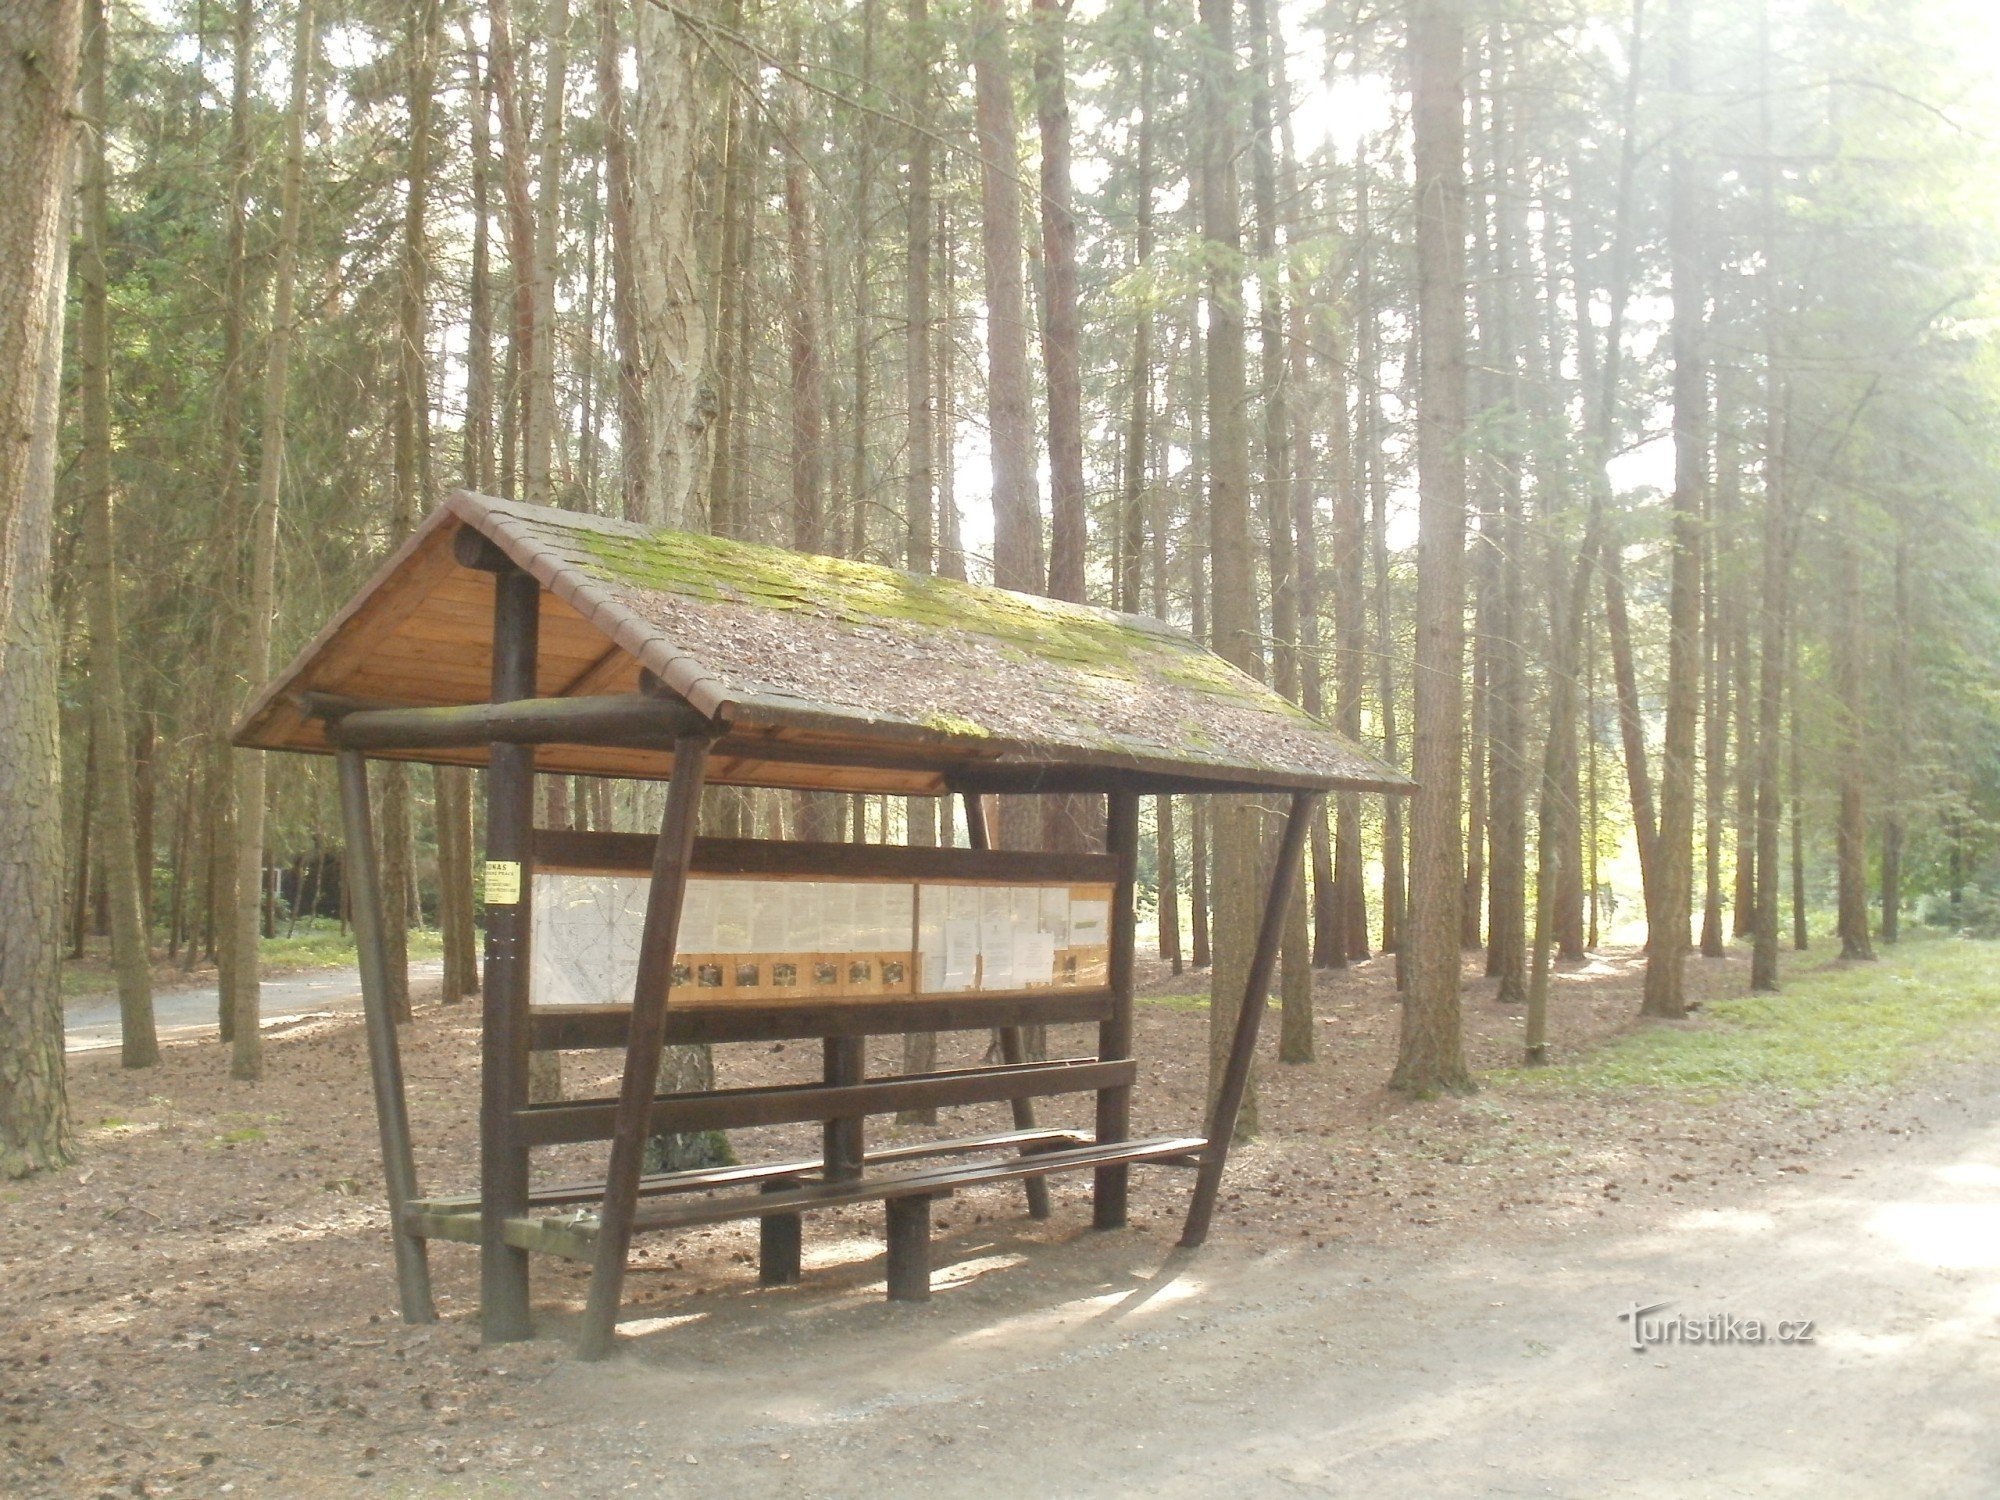 Hradec Králové - nghĩa trang rừng